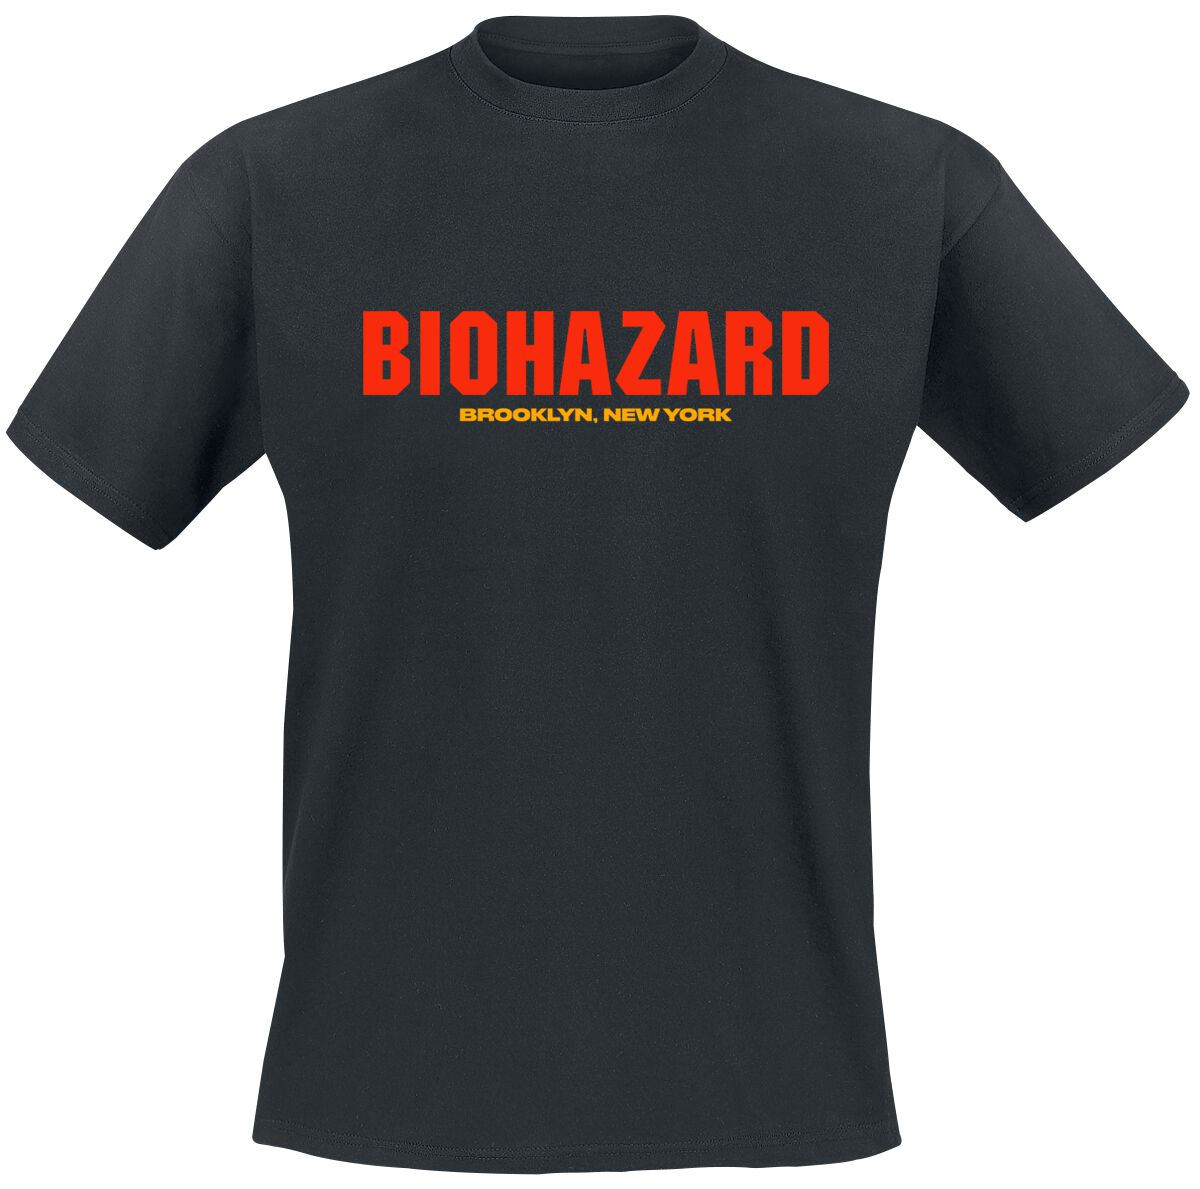 Biohazard T-Shirt - Urban discipline - S bis 4XL - für Männer - Größe XXL - schwarz  - Lizenziertes Merchandise!